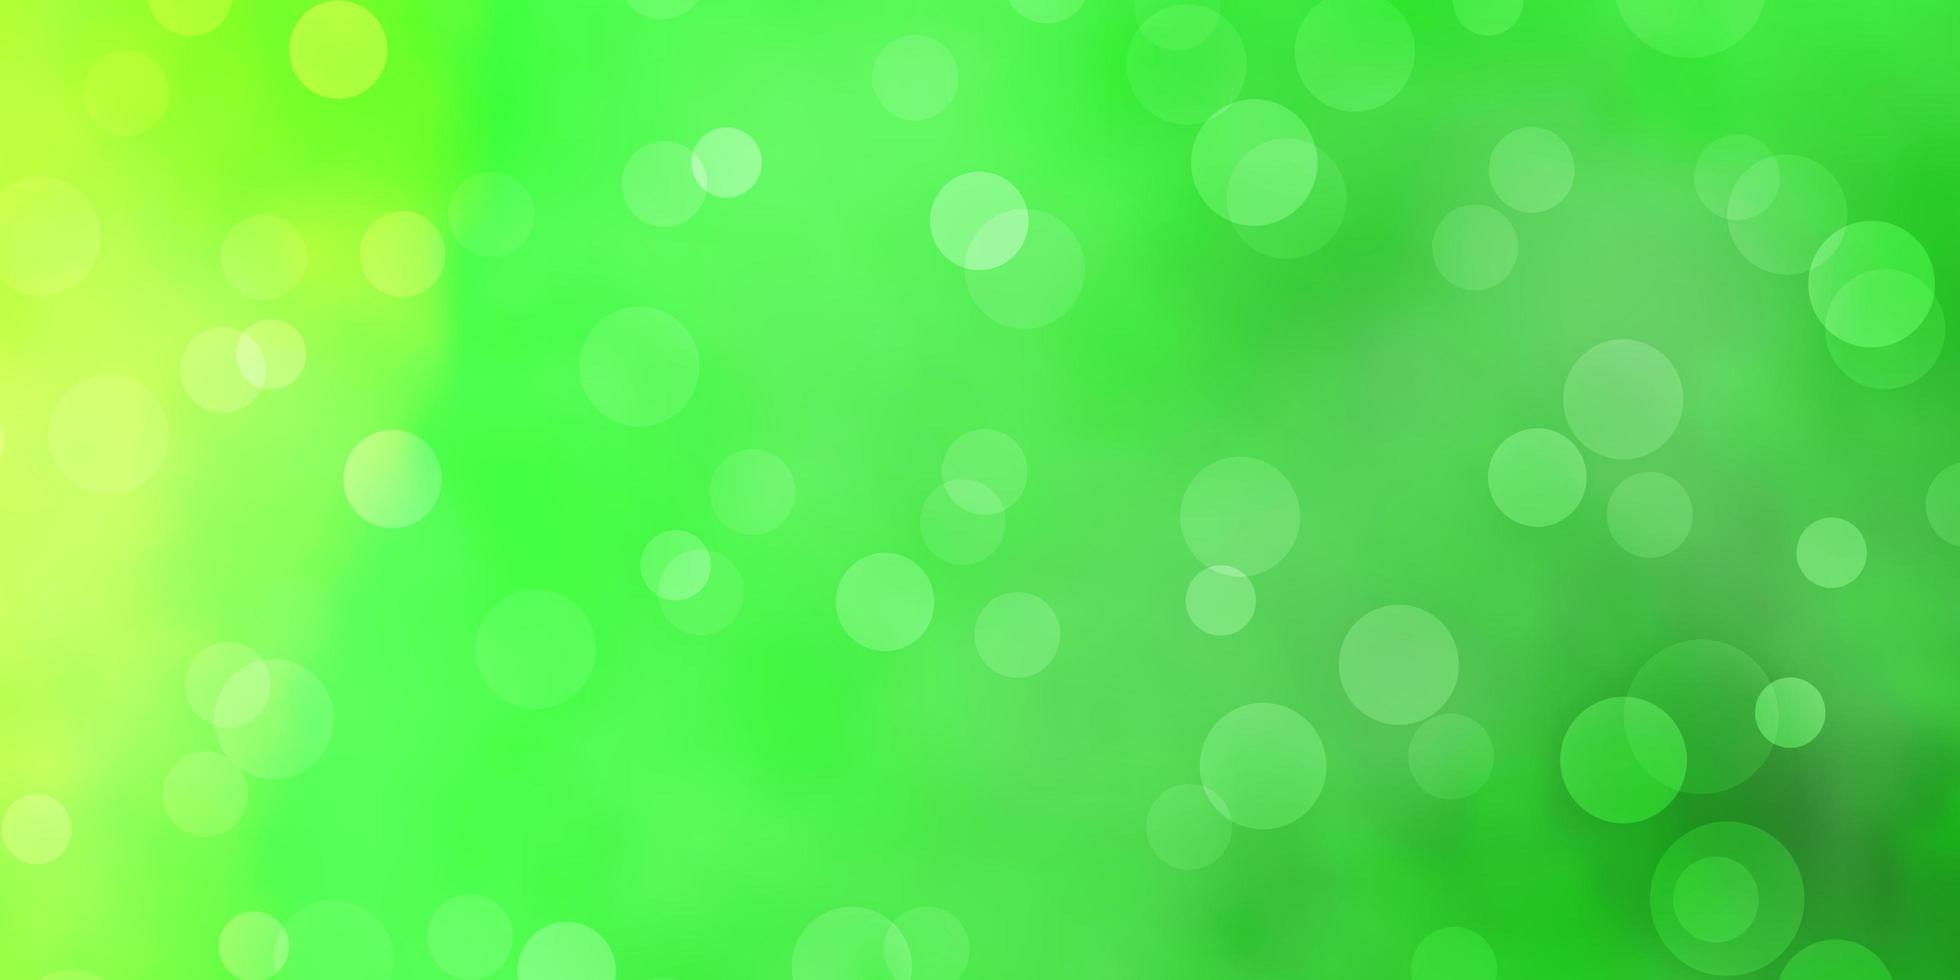 sfondo vettoriale verde chiaro con cerchi. illustrazione colorata con punti sfumati in stile natura. modello per siti Web, pagine di destinazione.